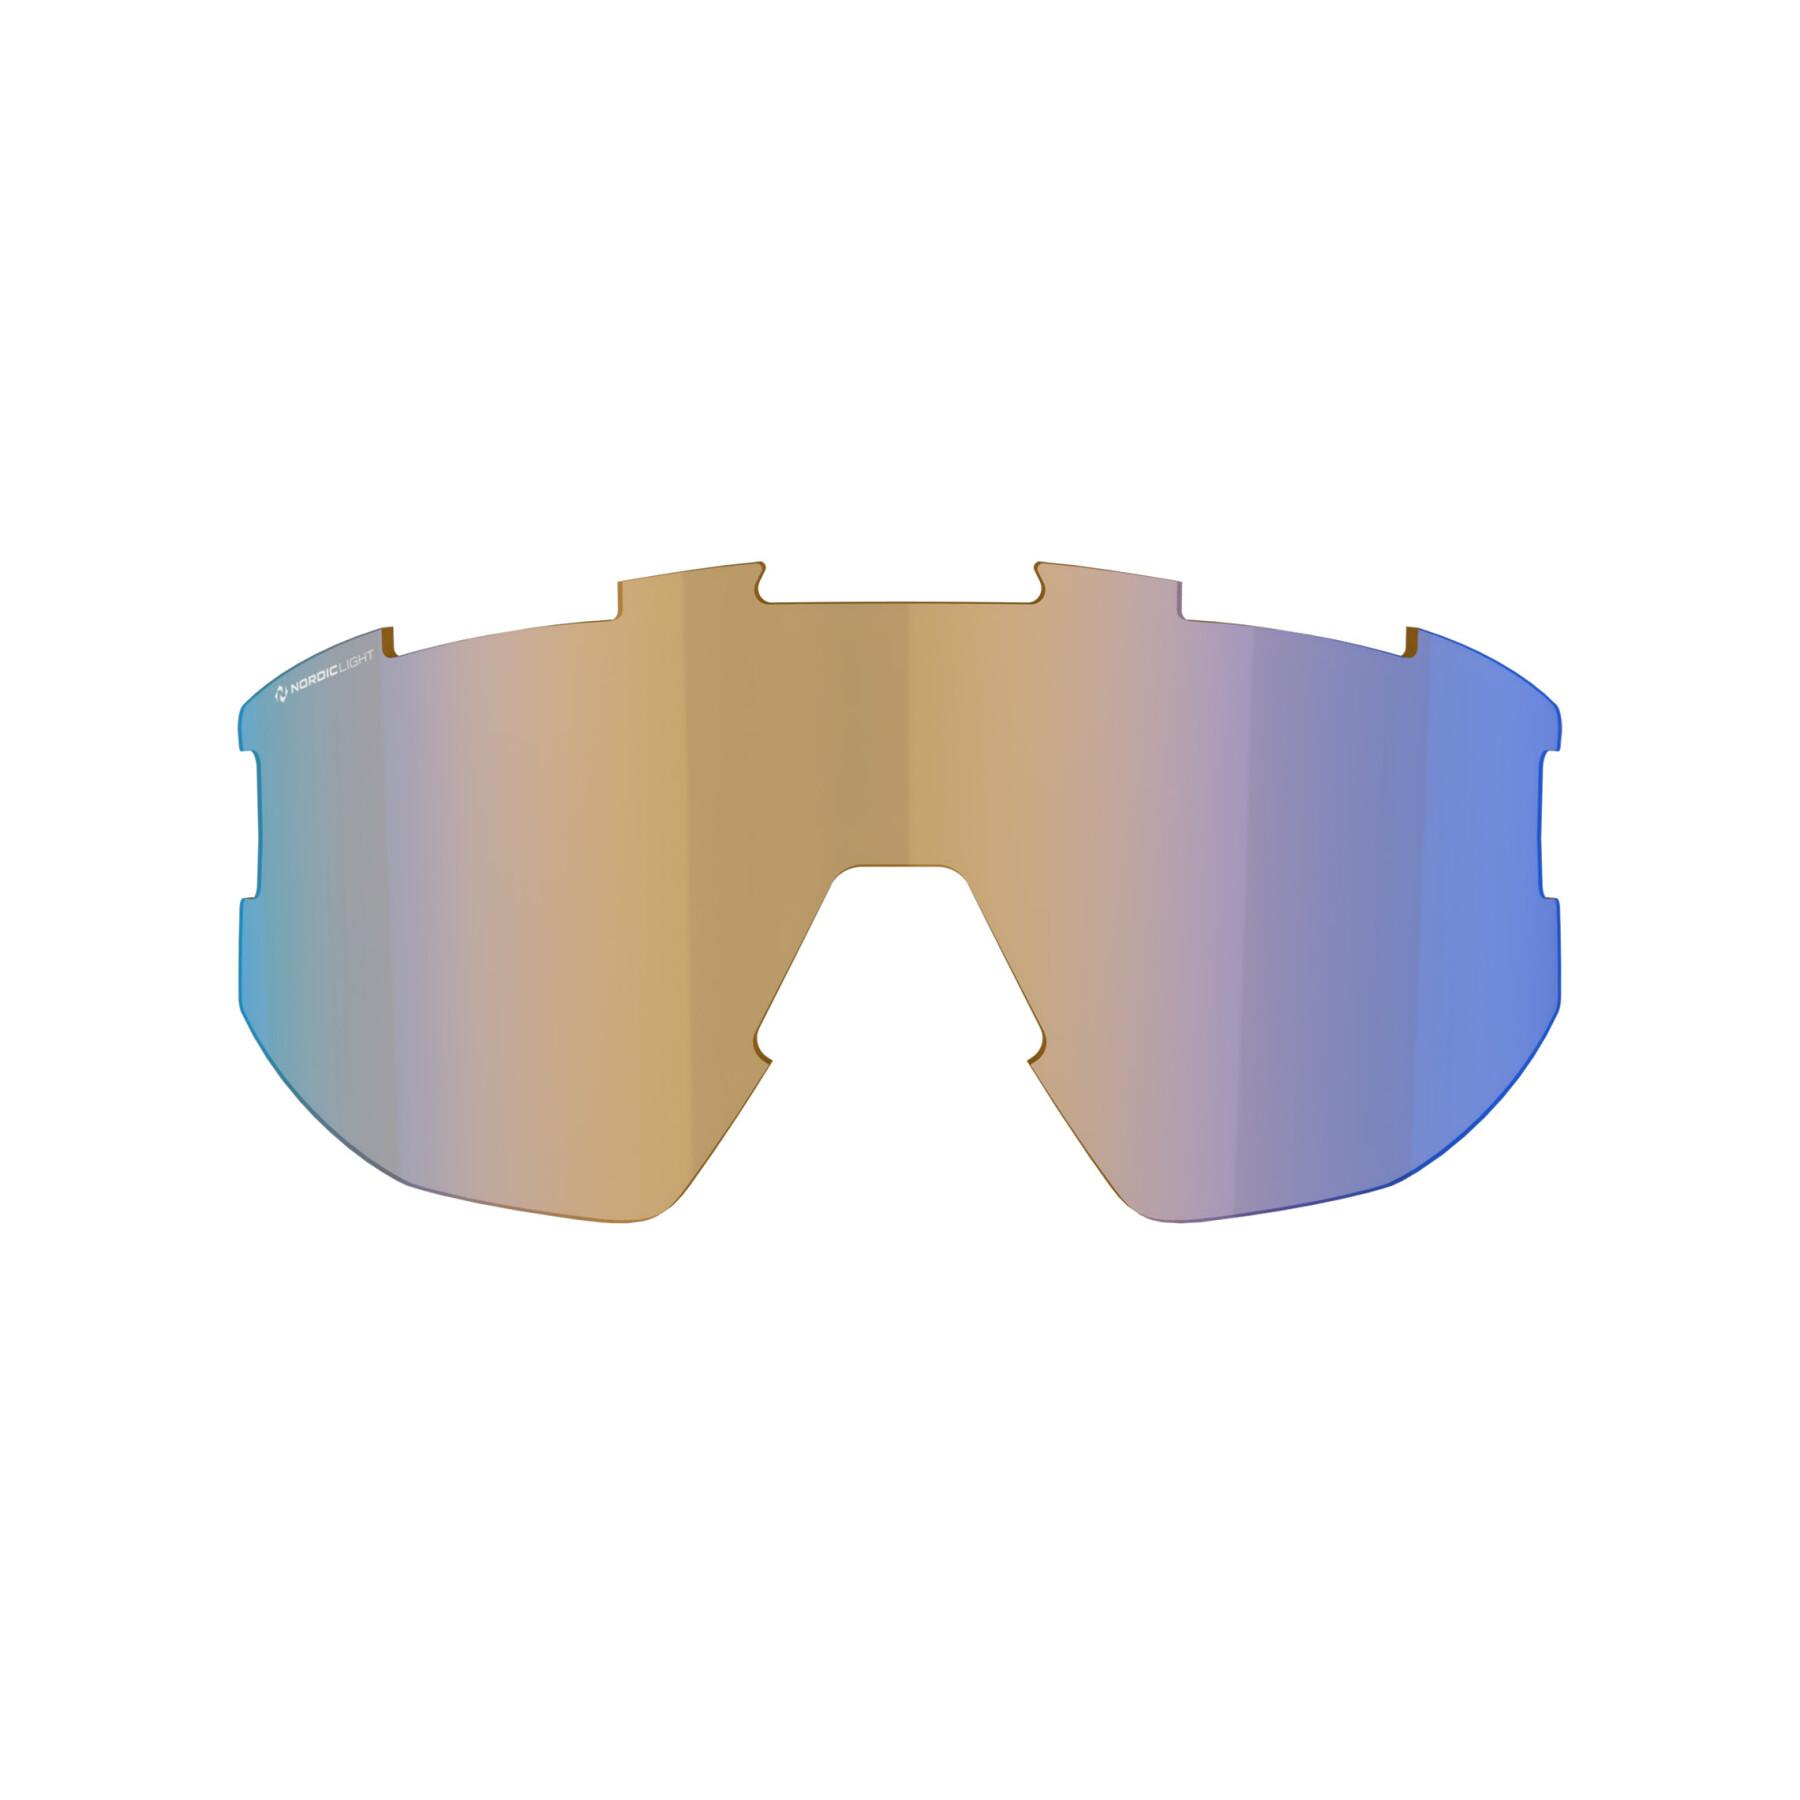 Lentes sobresselentes para óculos Bliz Vision nano optic